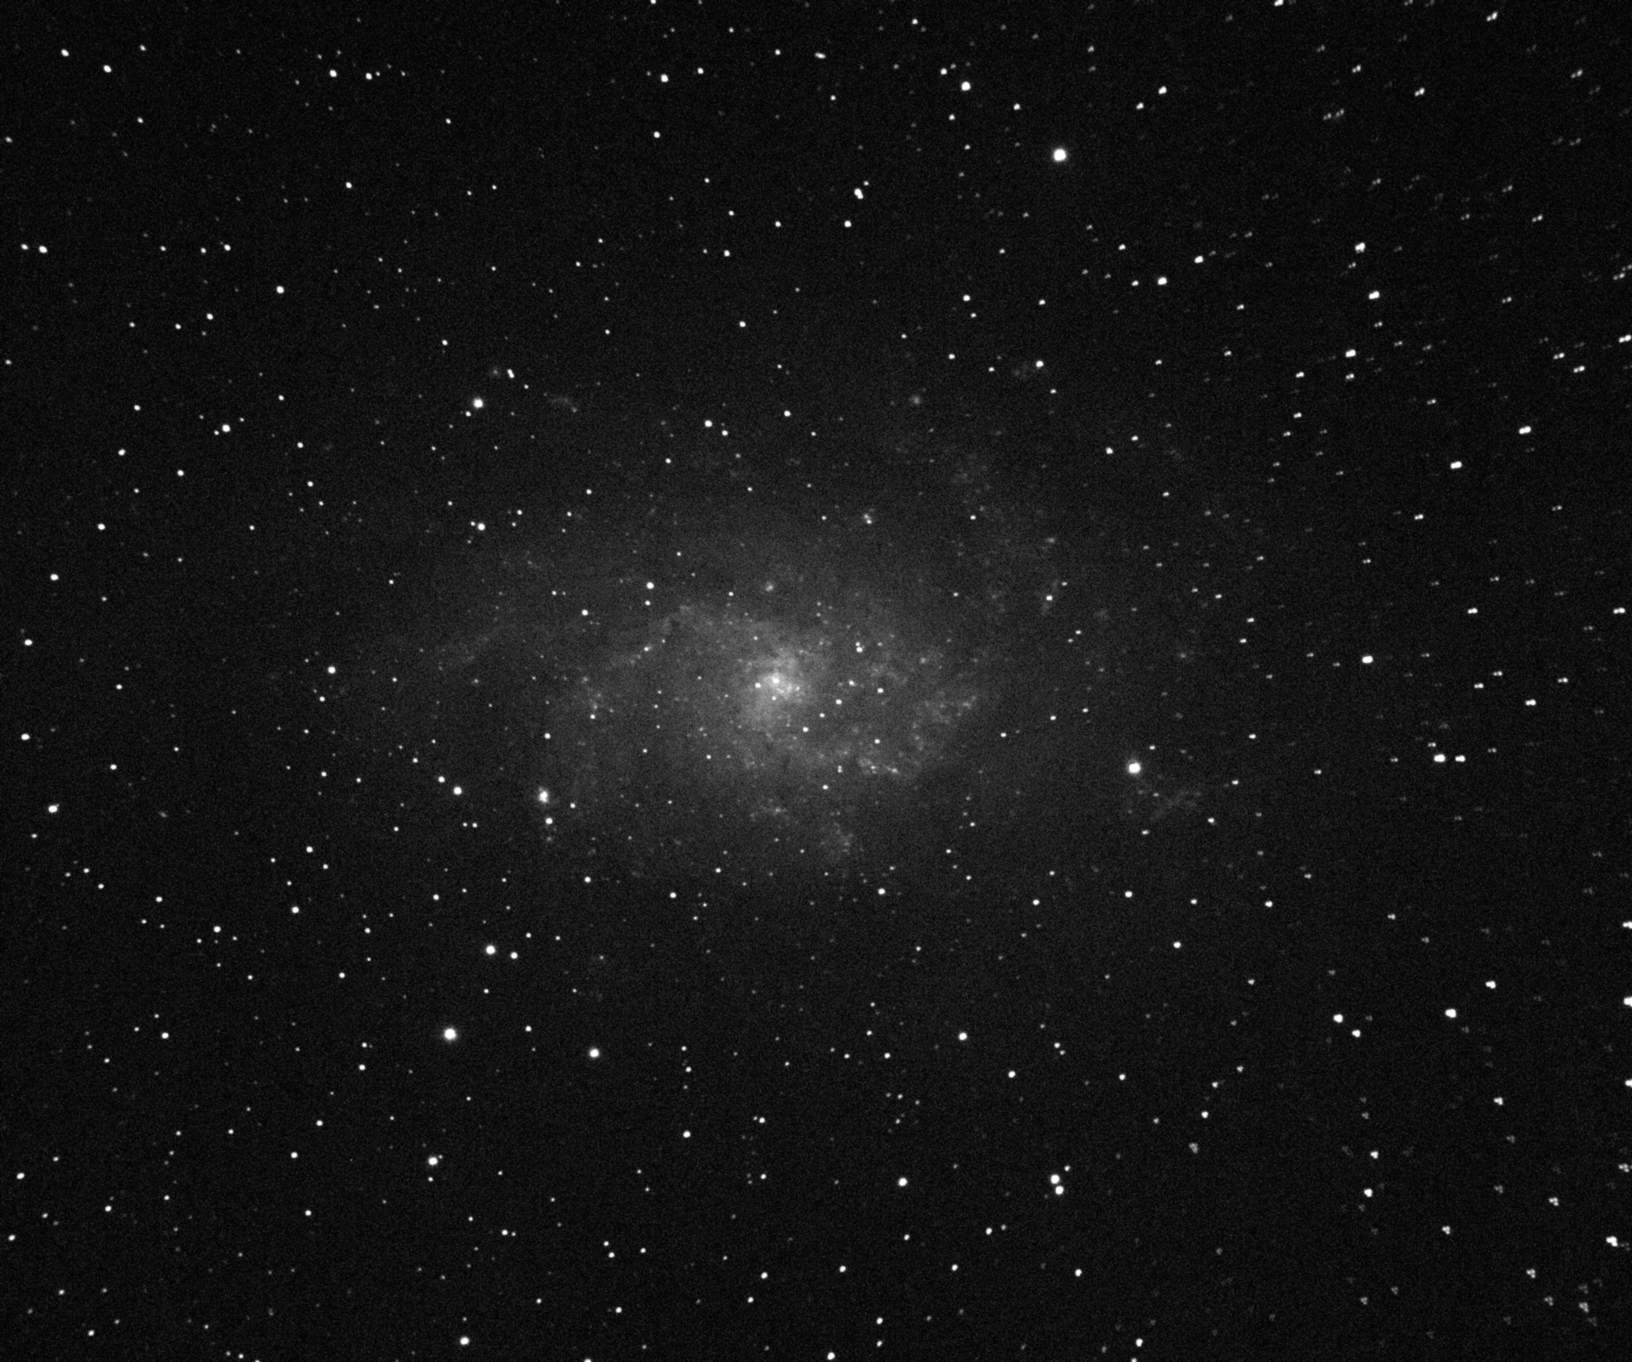 Featured image for “M33 in Triangulum”